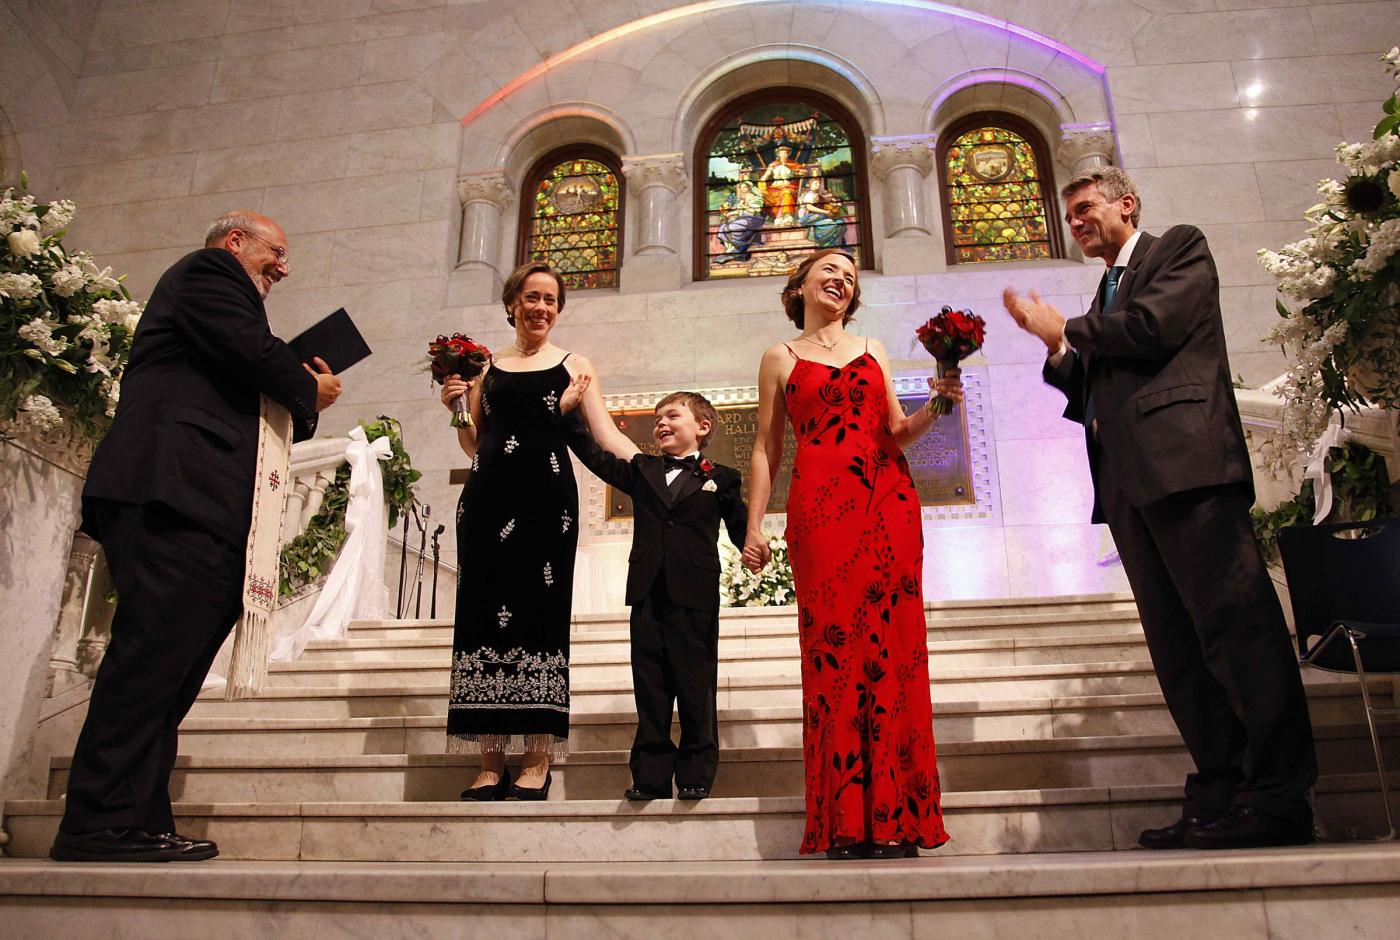 Margaret e Cathy si sposano il primo matrimonio gay del Minnesota 06